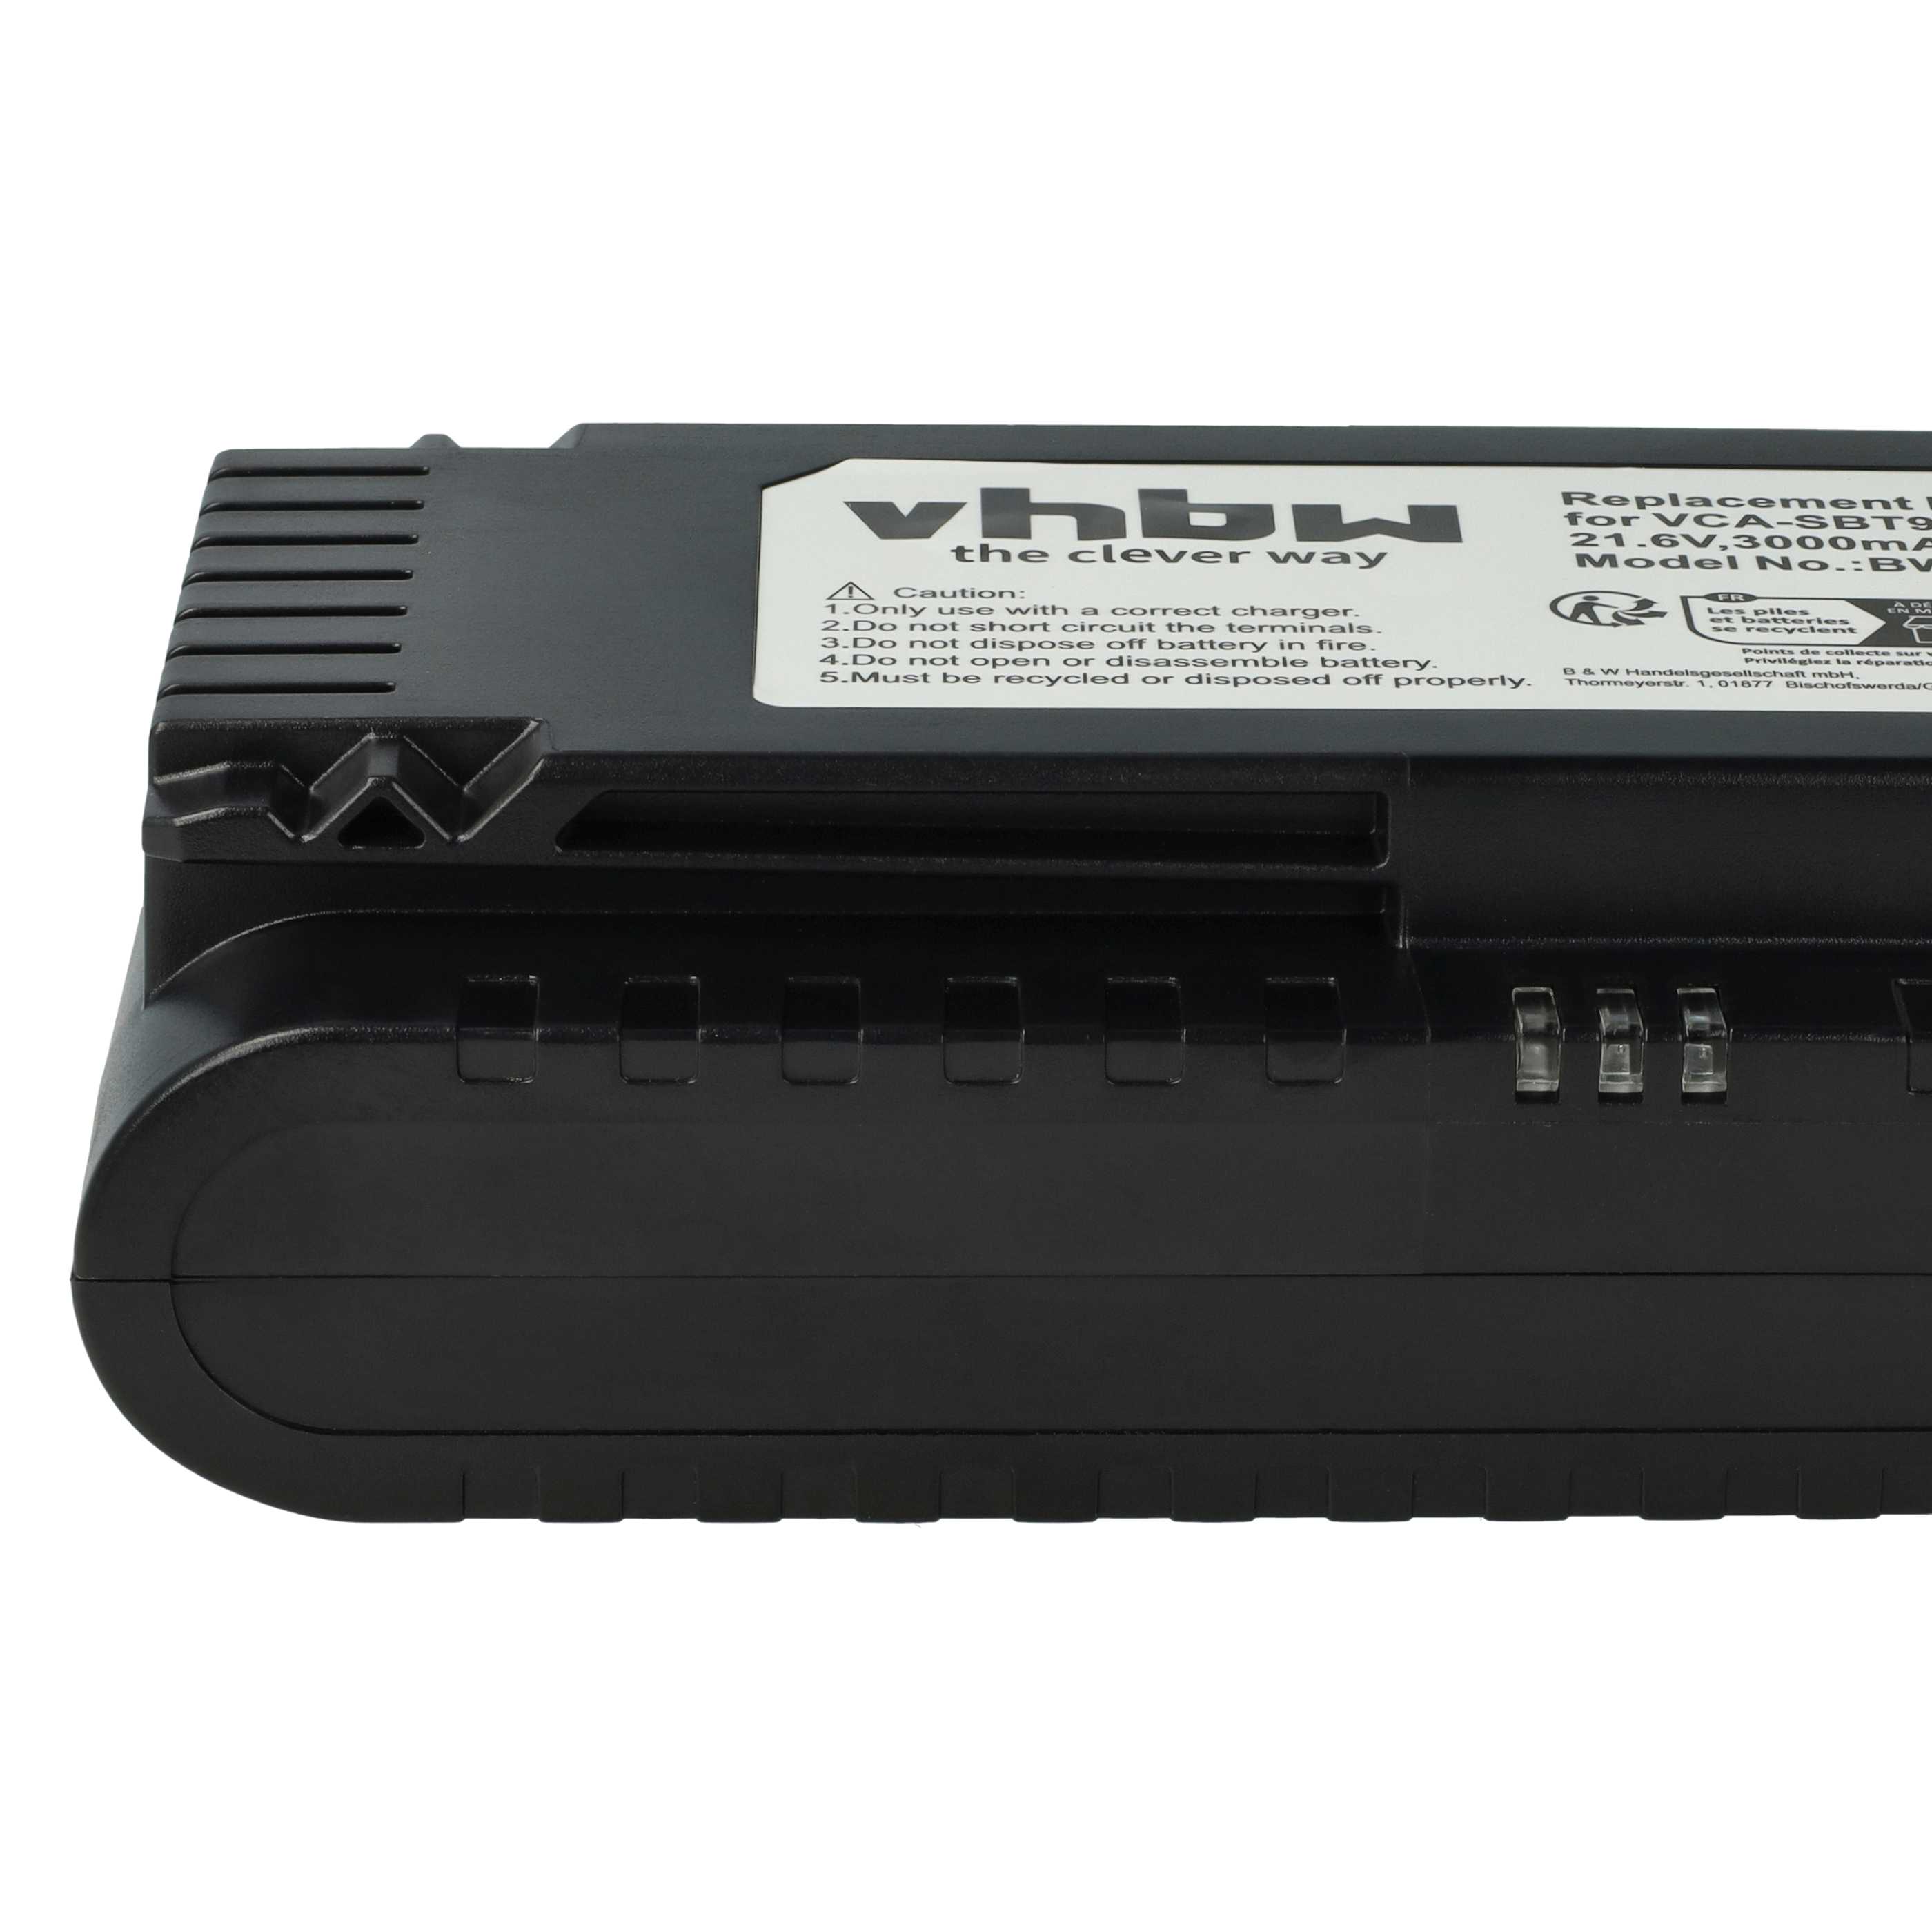 Batterie remplace Samsung VCA-SBT90E, VCA-SBT90, DJ96-00221A pour aspirateur - 3000mAh 21,6V Li-ion